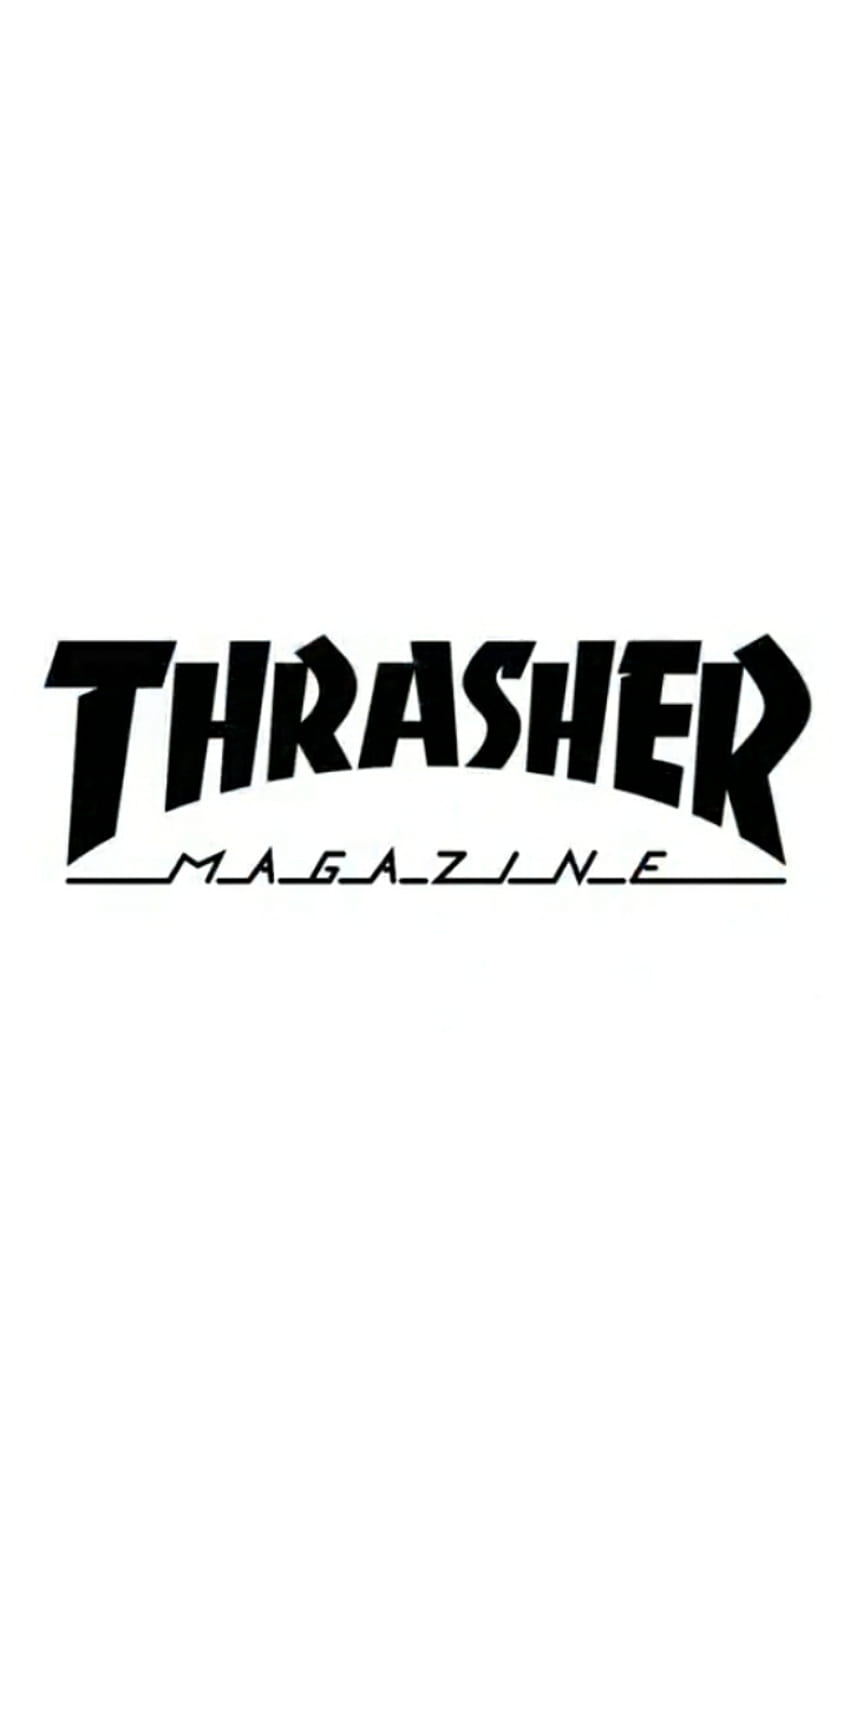 Thrasher white, skateboard, brand HD phone wallpaper | Pxfuel